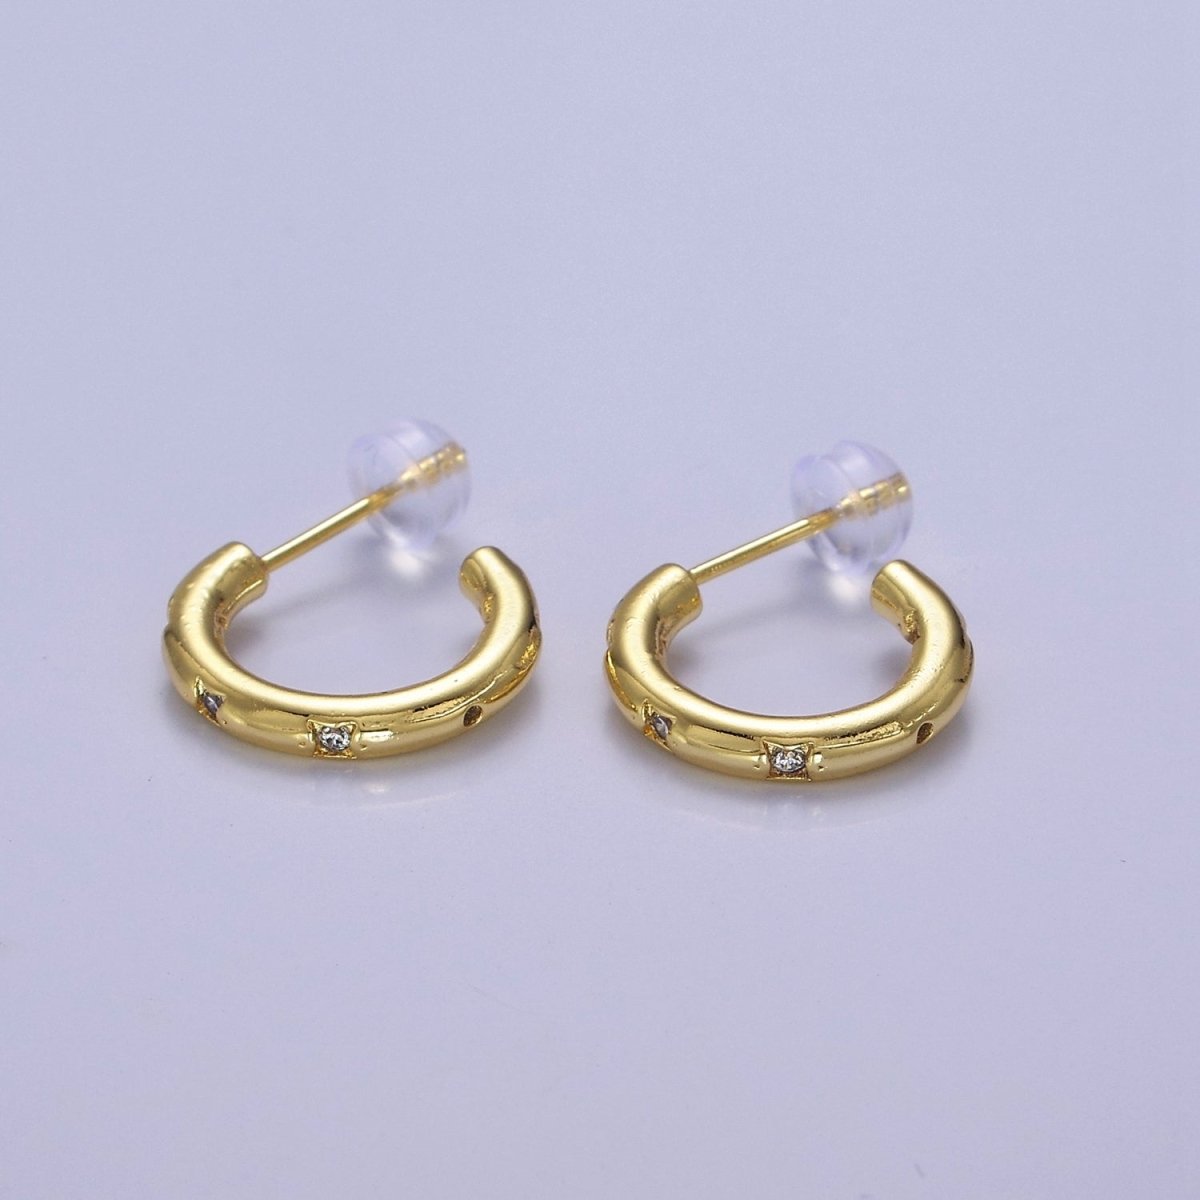 Gold Star Hoop Earring Cz Star Earring Celestial Starburst Everyday Jewelry V-167 V-168 V-169 - DLUXCA